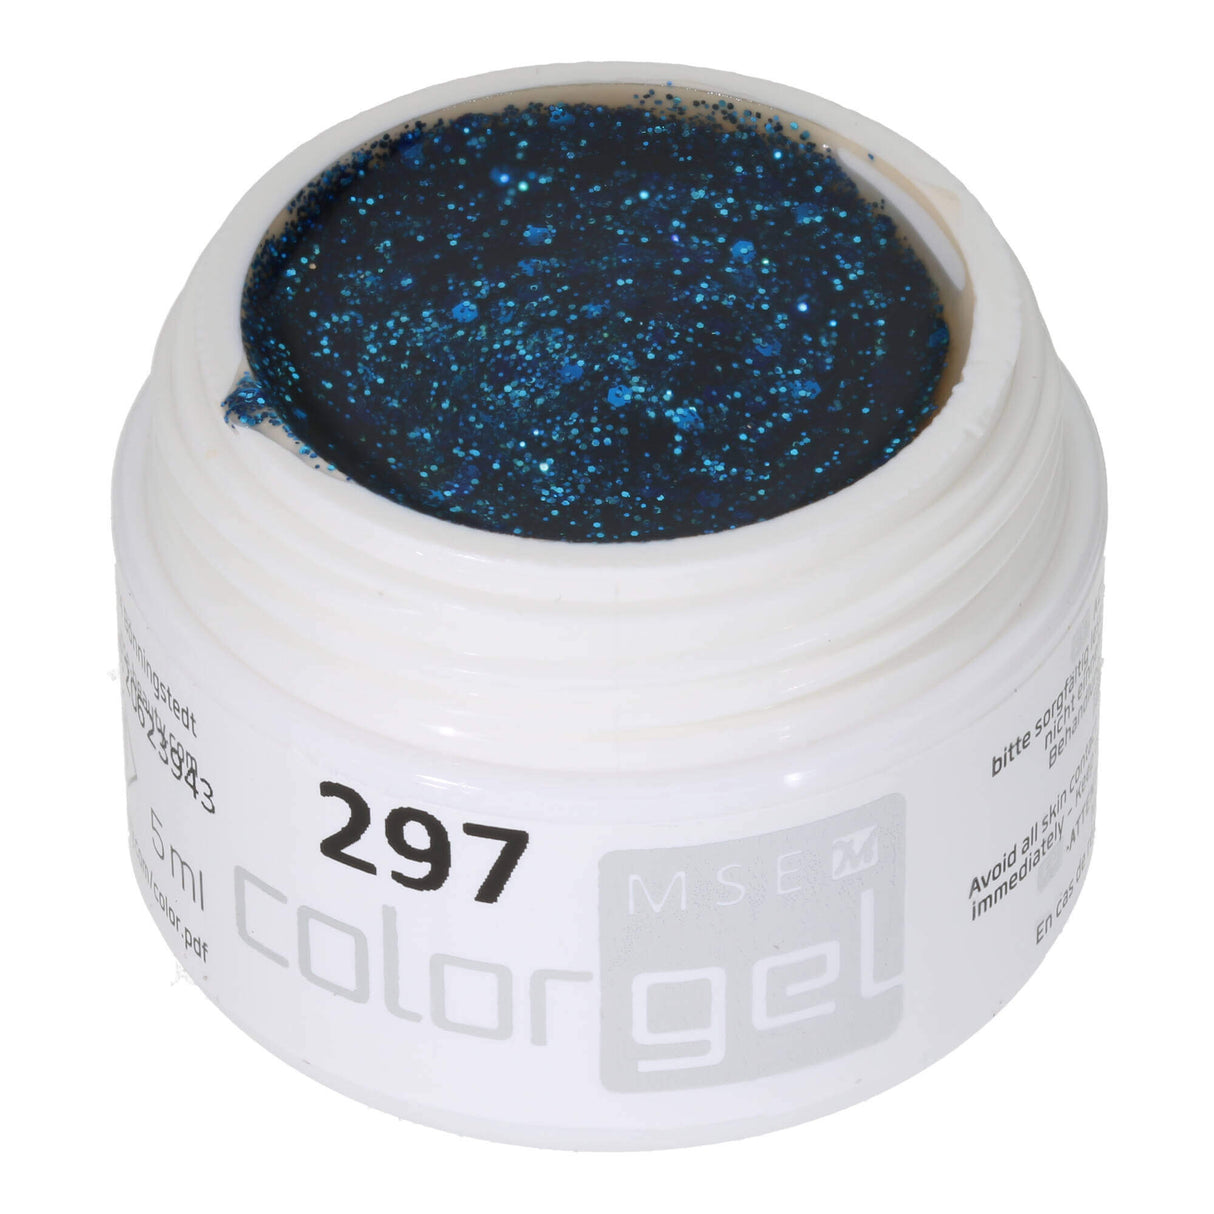 #297 Premium-GLITTER Color Gel 5ml Klassisches blaues Glittergel dominiert von groben Glitterpartikeln